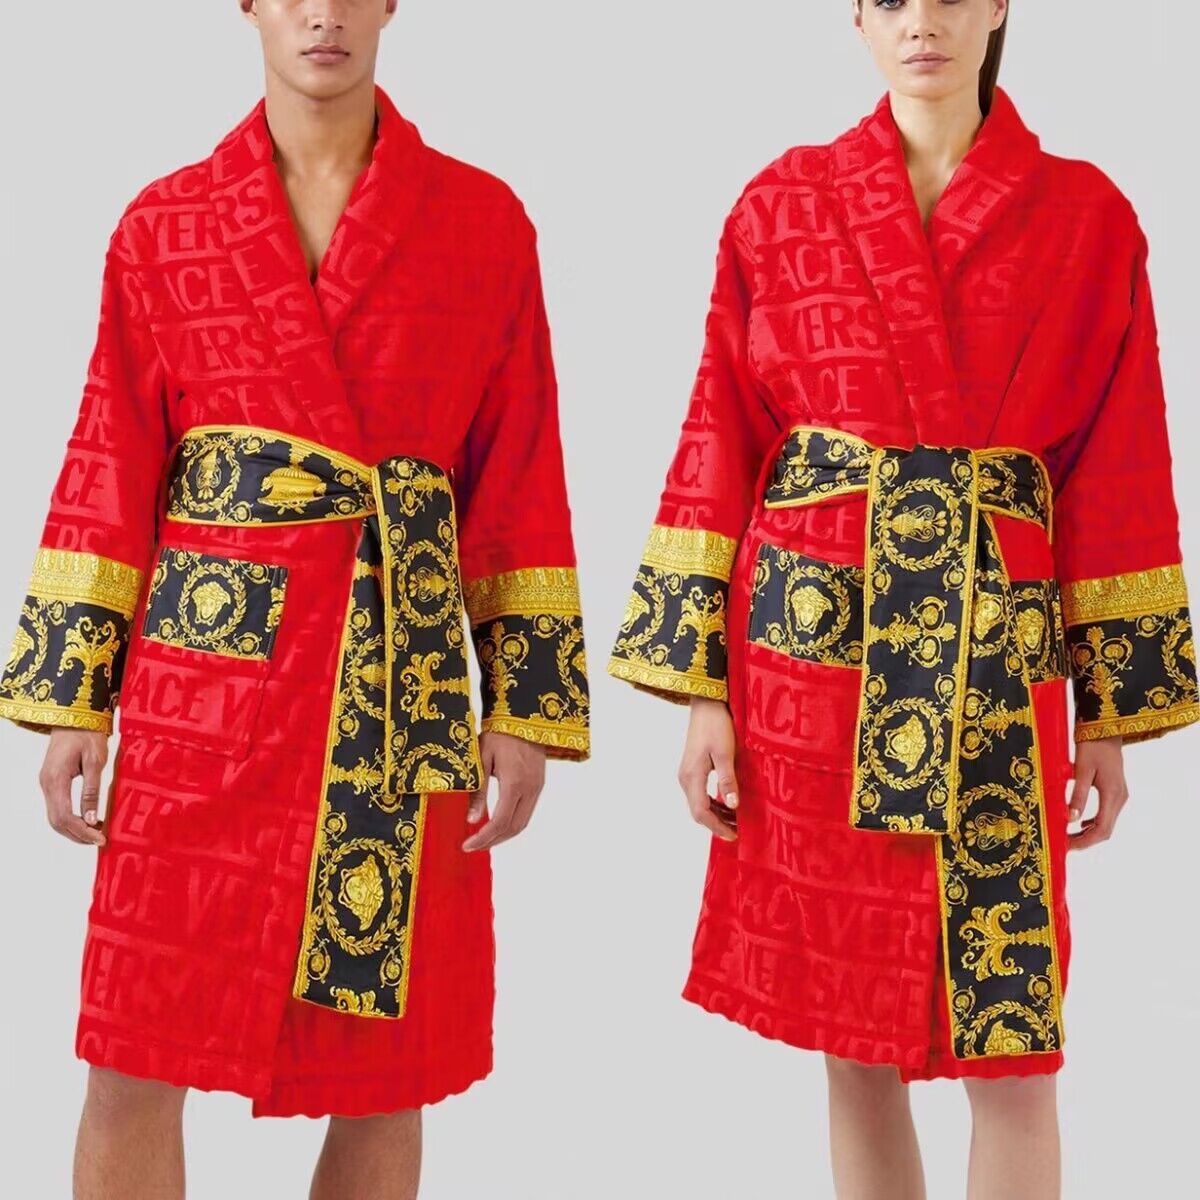 Ver BAROQUE bathrobe nightgown